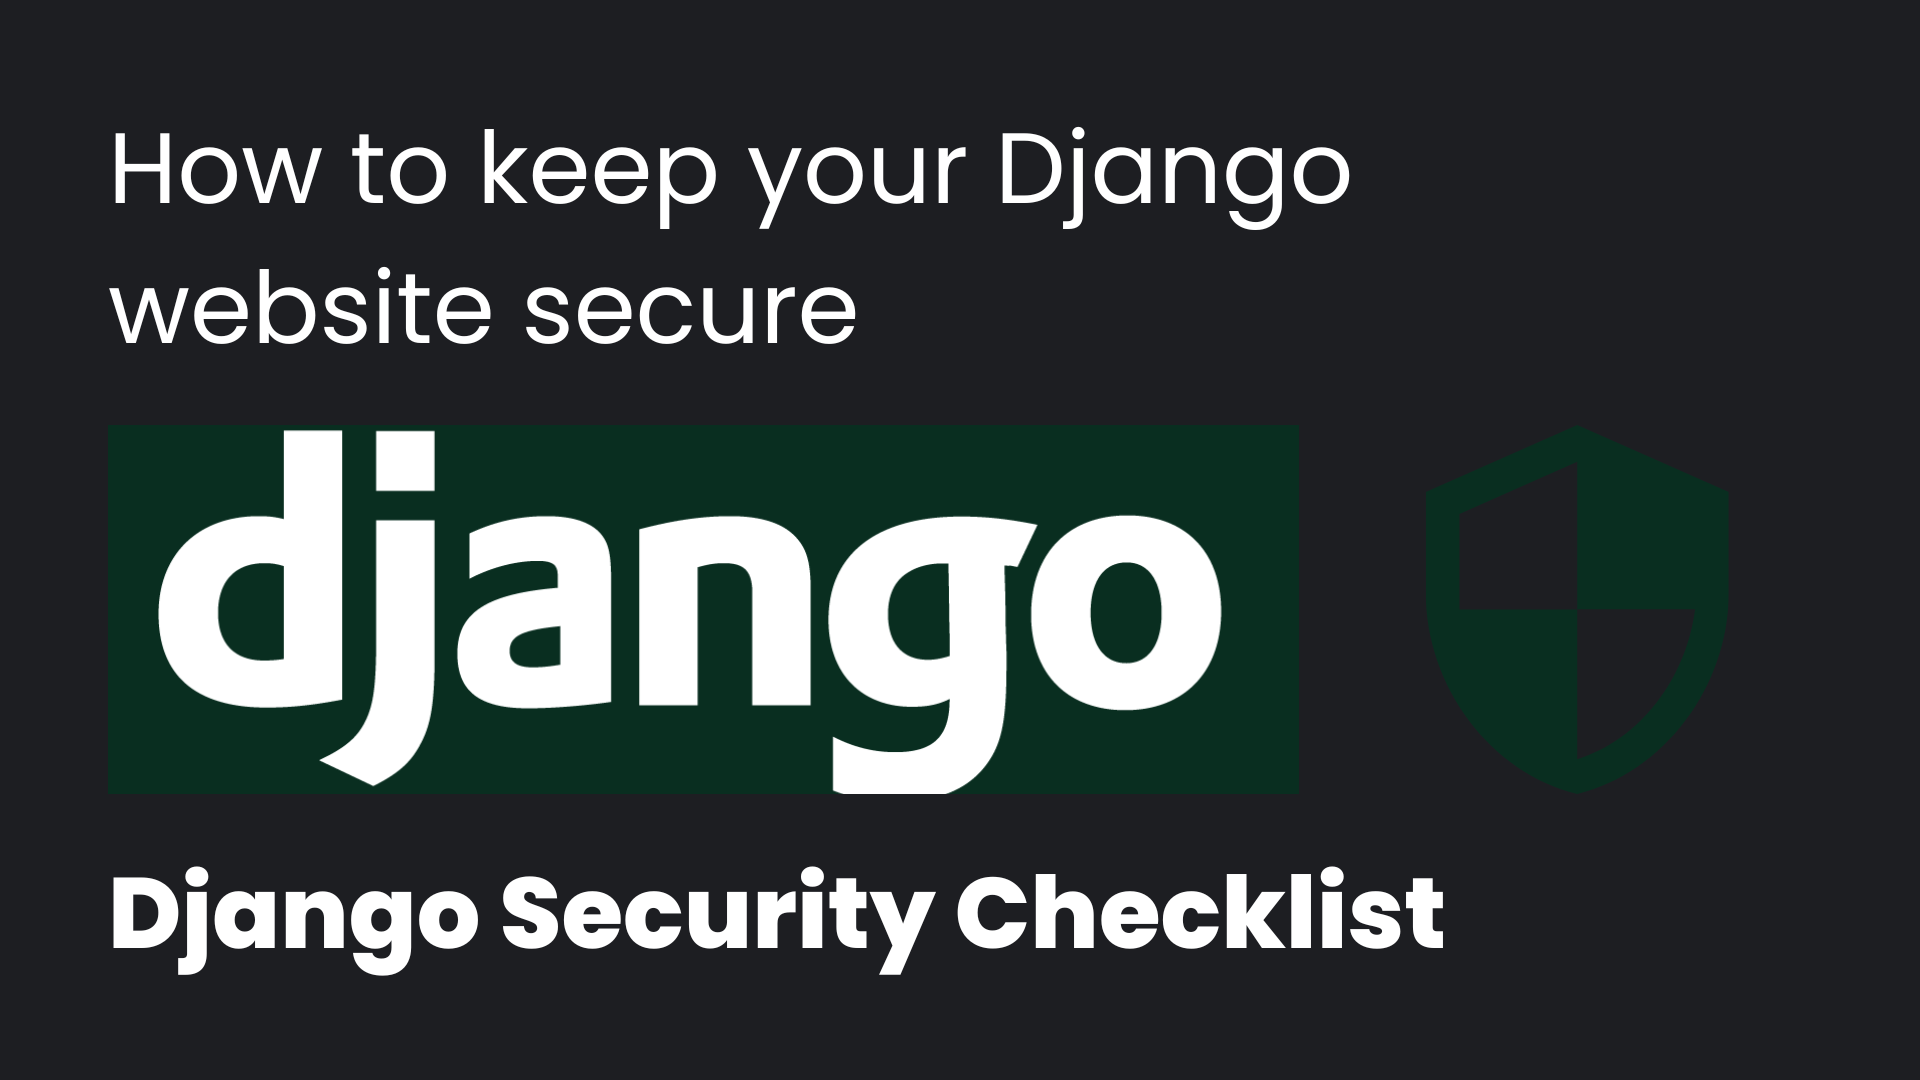 Django security checklist